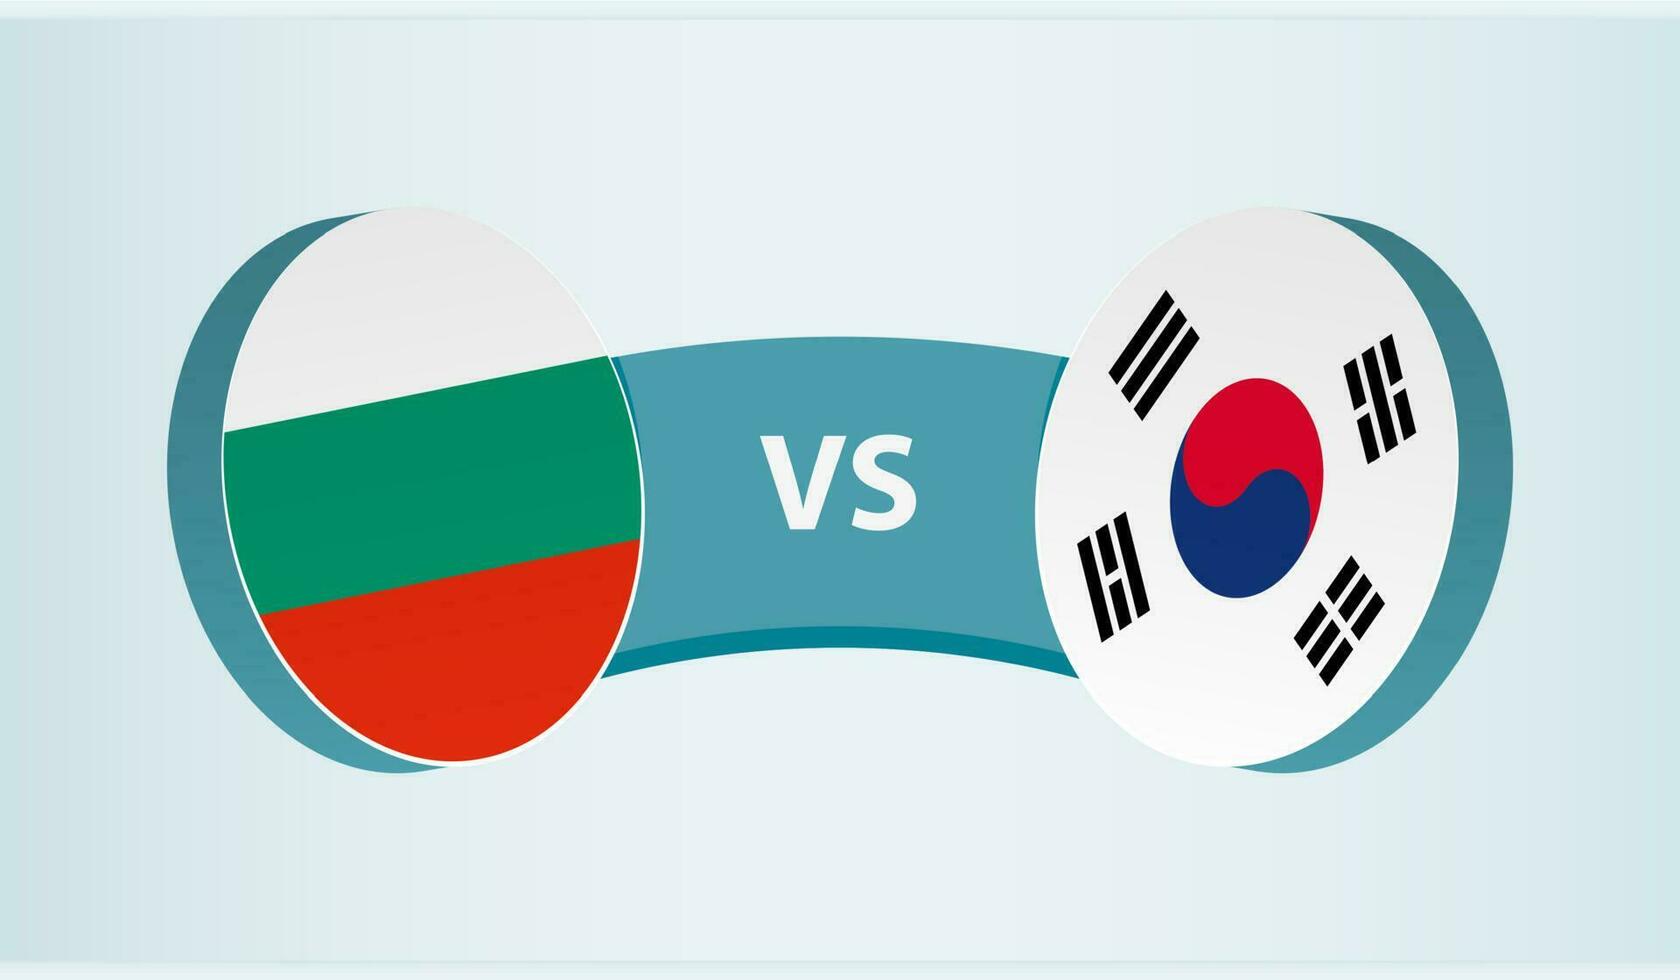 Bulgaria versus sur Corea, equipo Deportes competencia concepto. vector